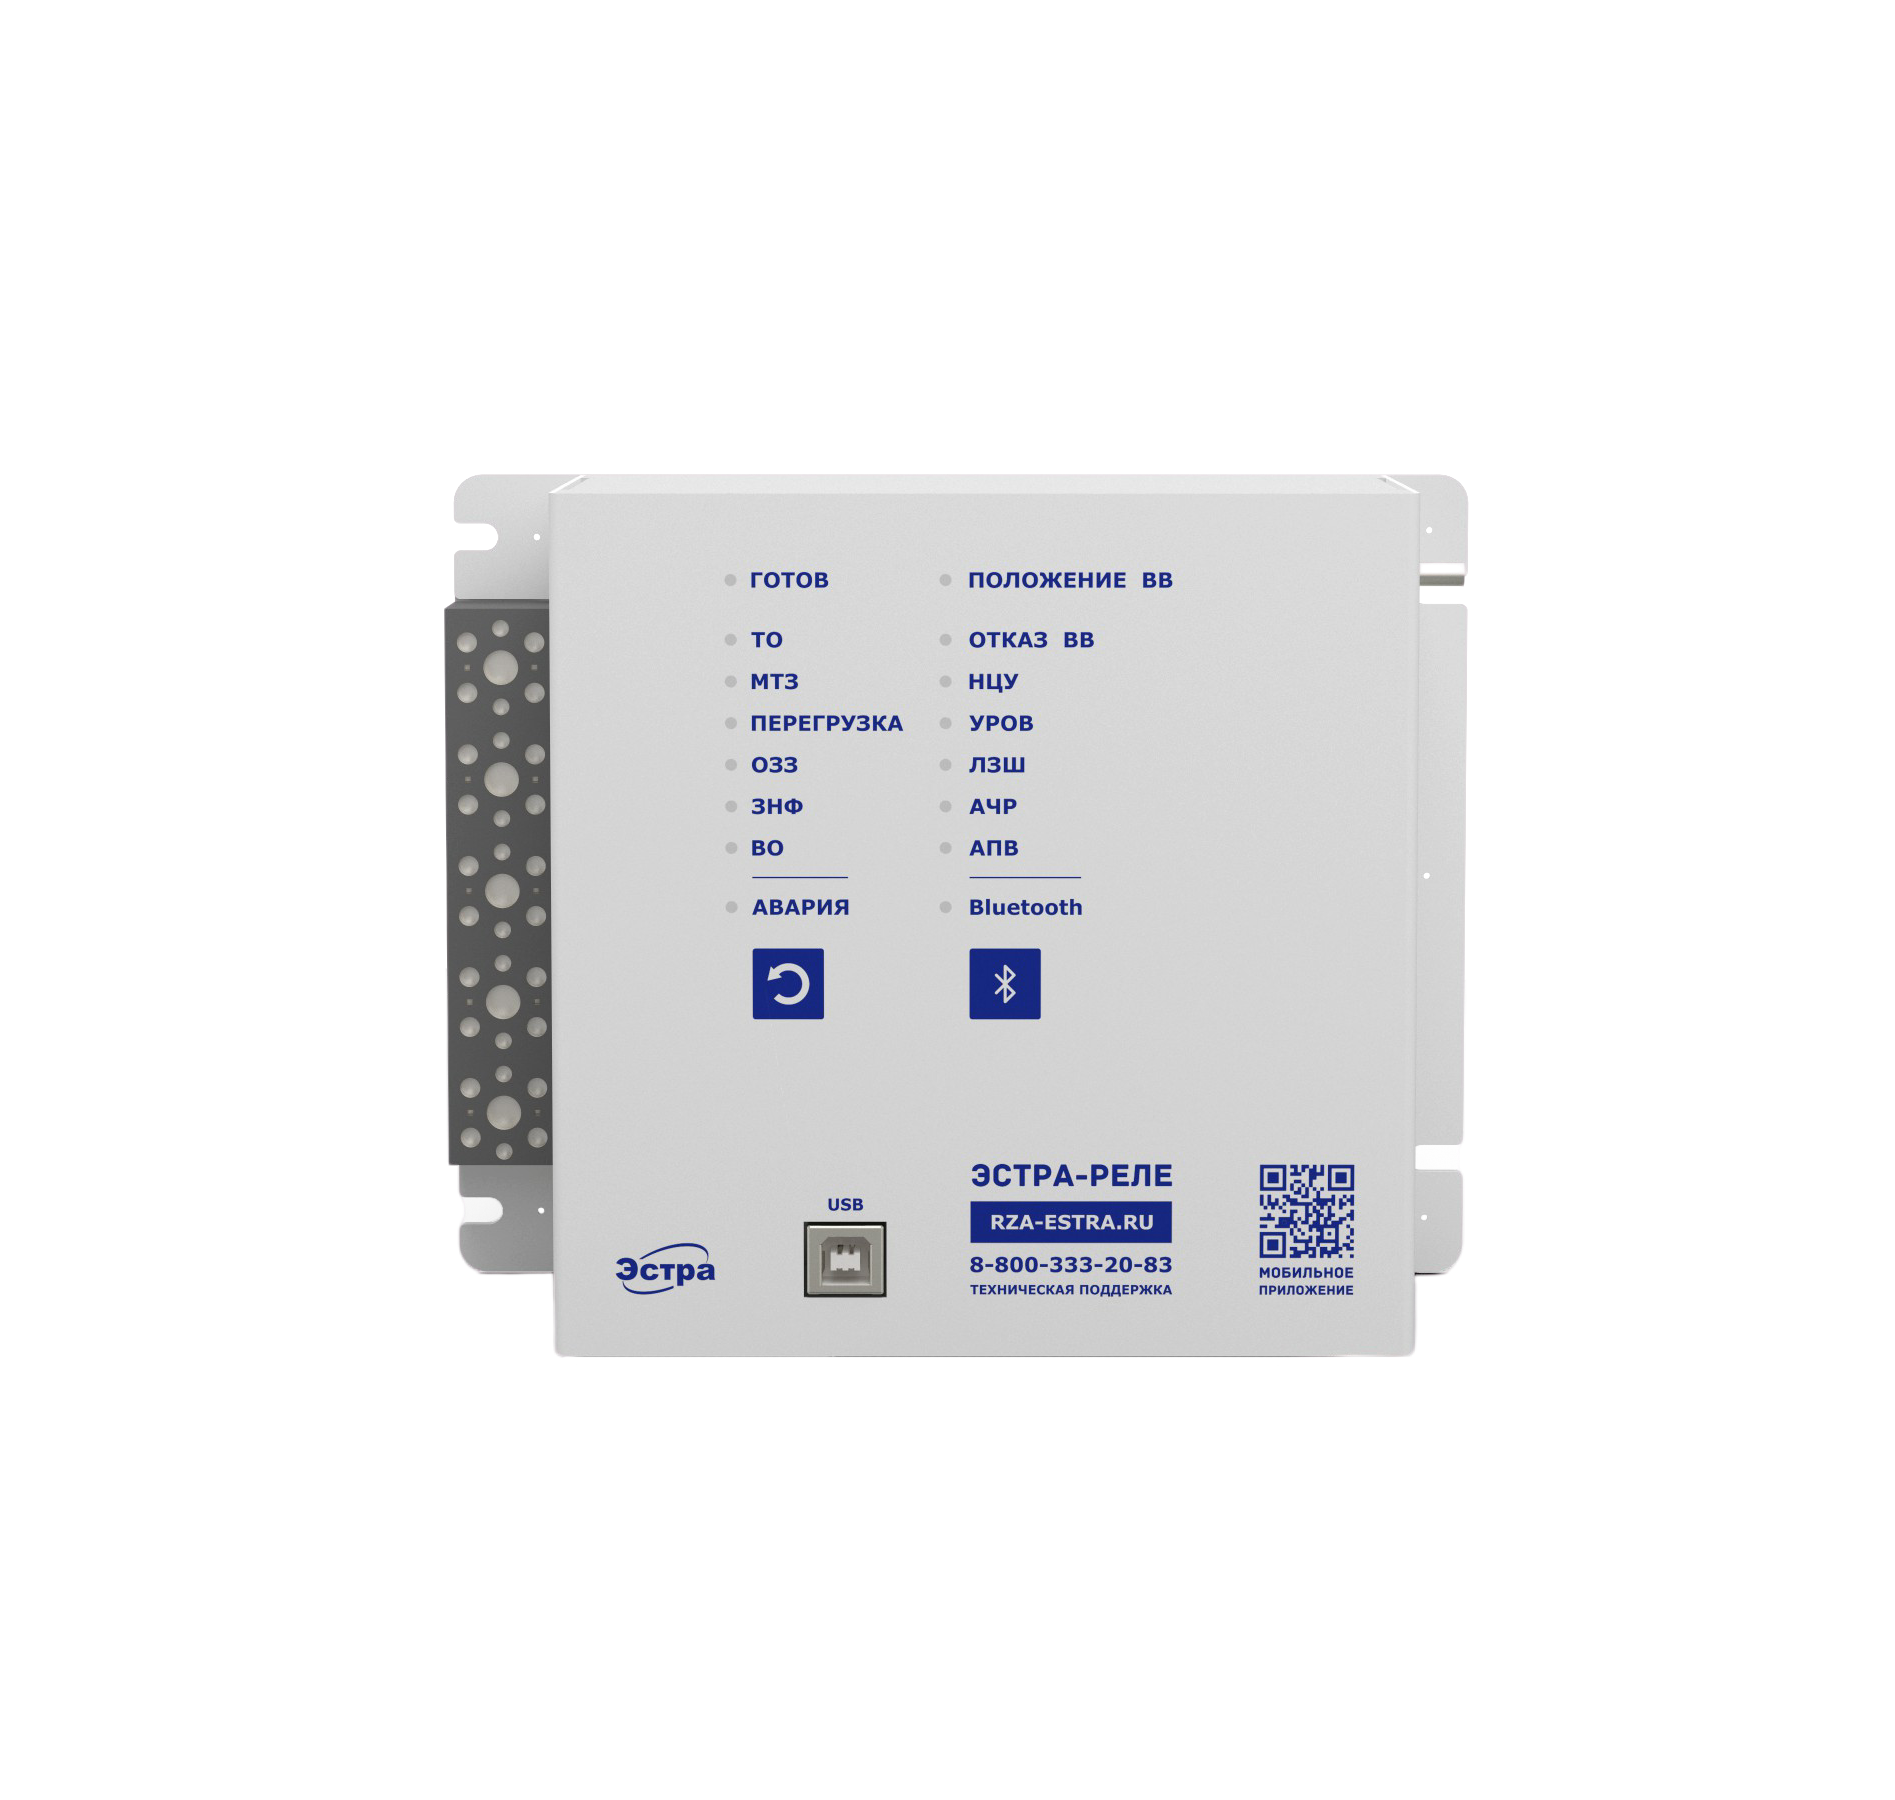 Бюджетное микропроцессорное устройство релейной защиты и автоматики ЭСТРА-РЕЛЕ фото 1